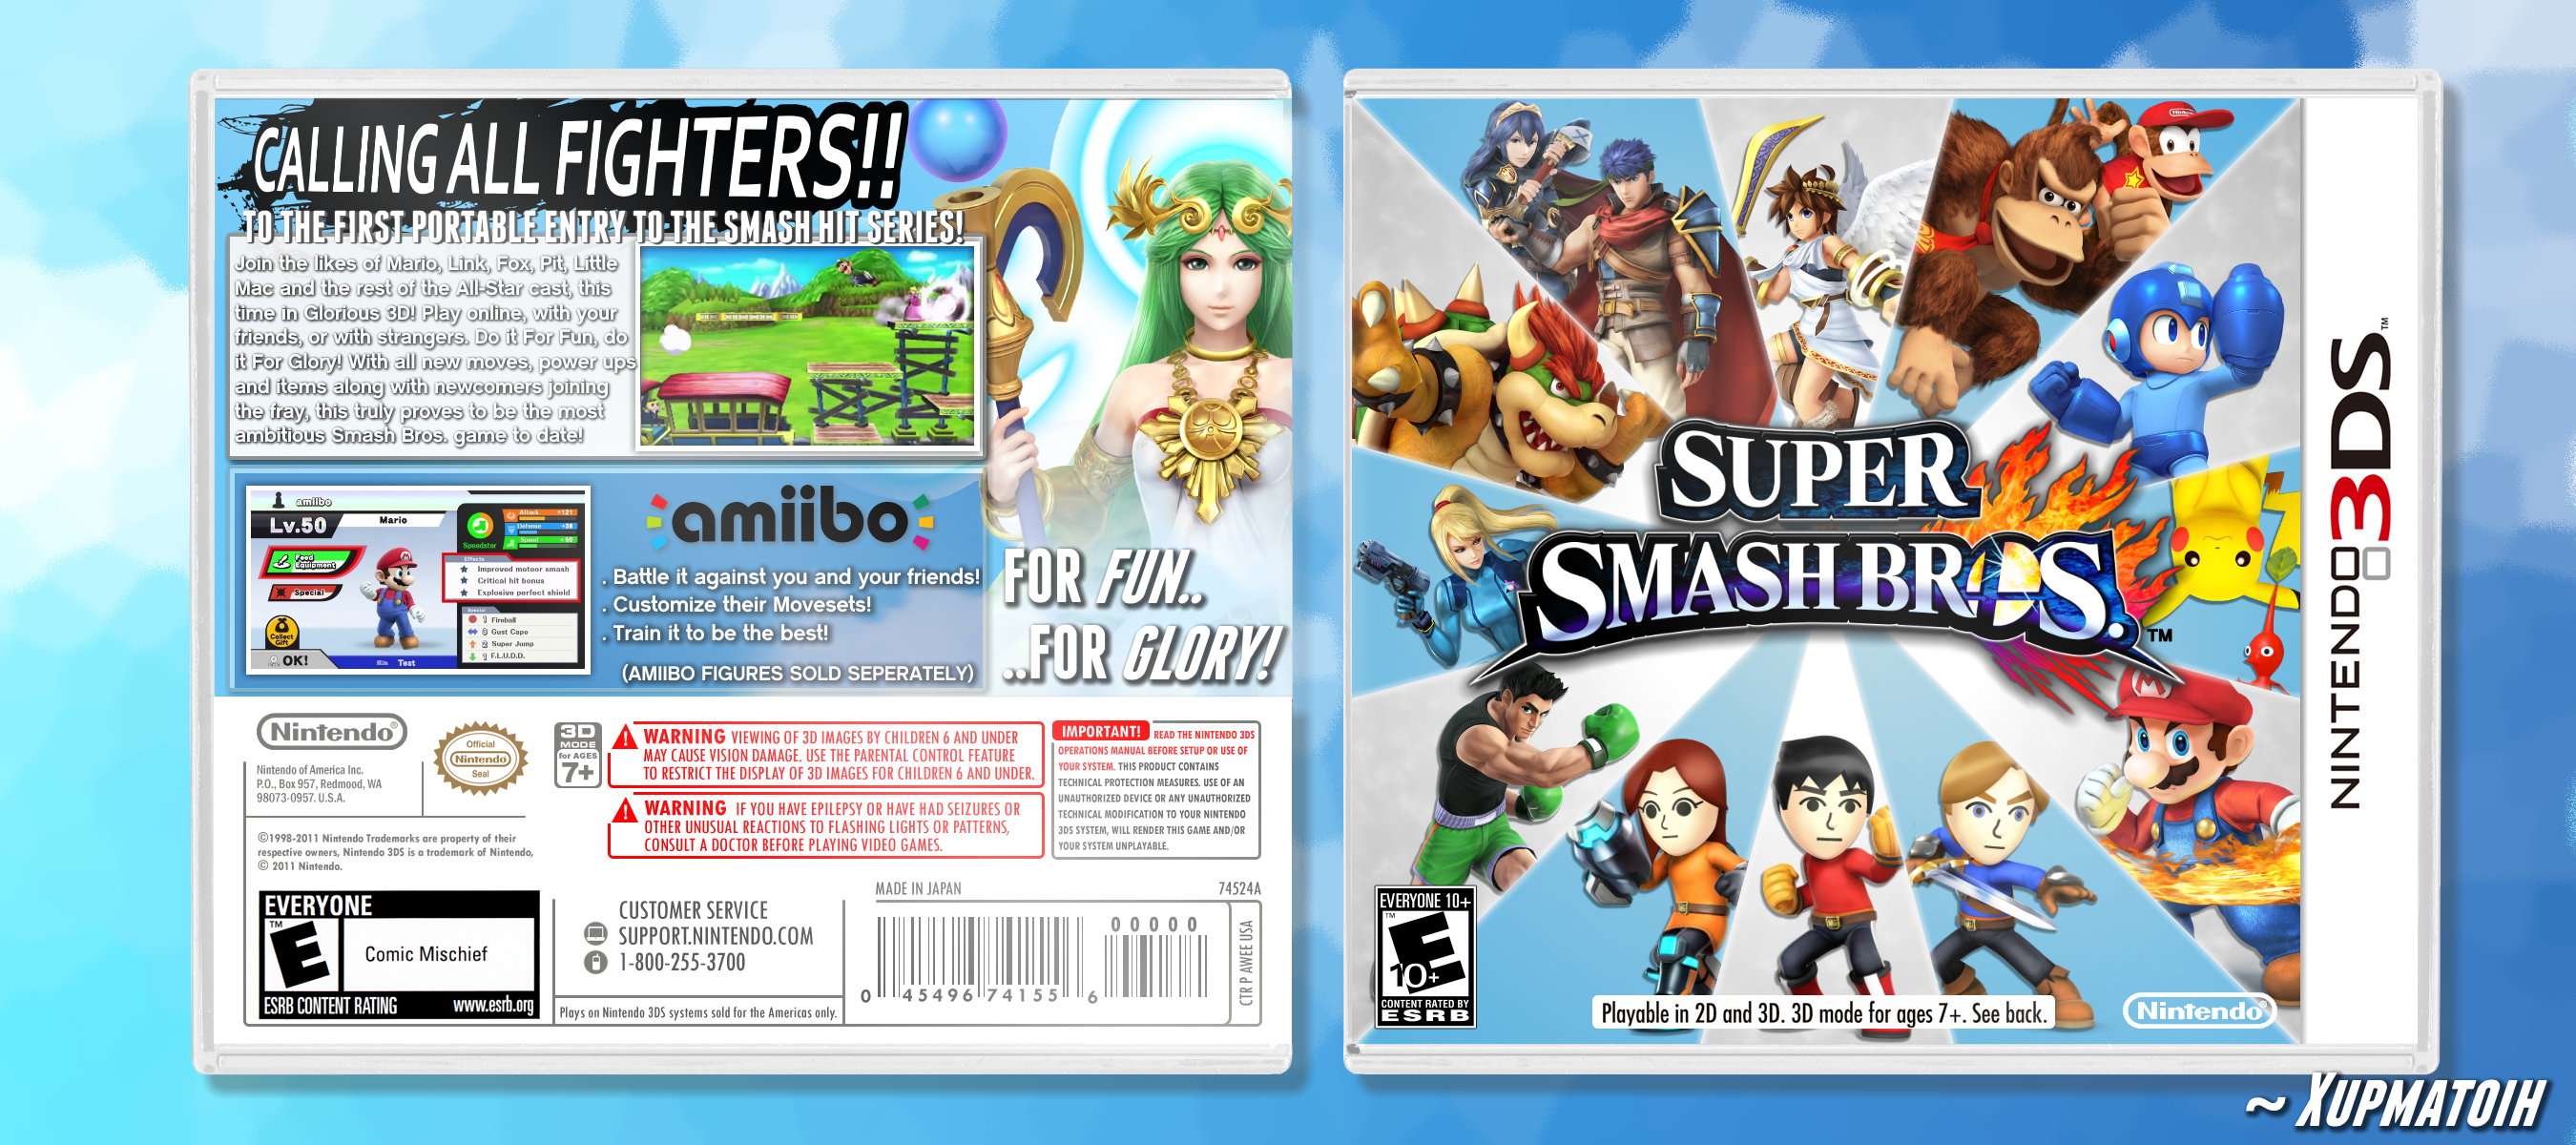 Super Smash Bros for Nintendo 3DS box art cover. 